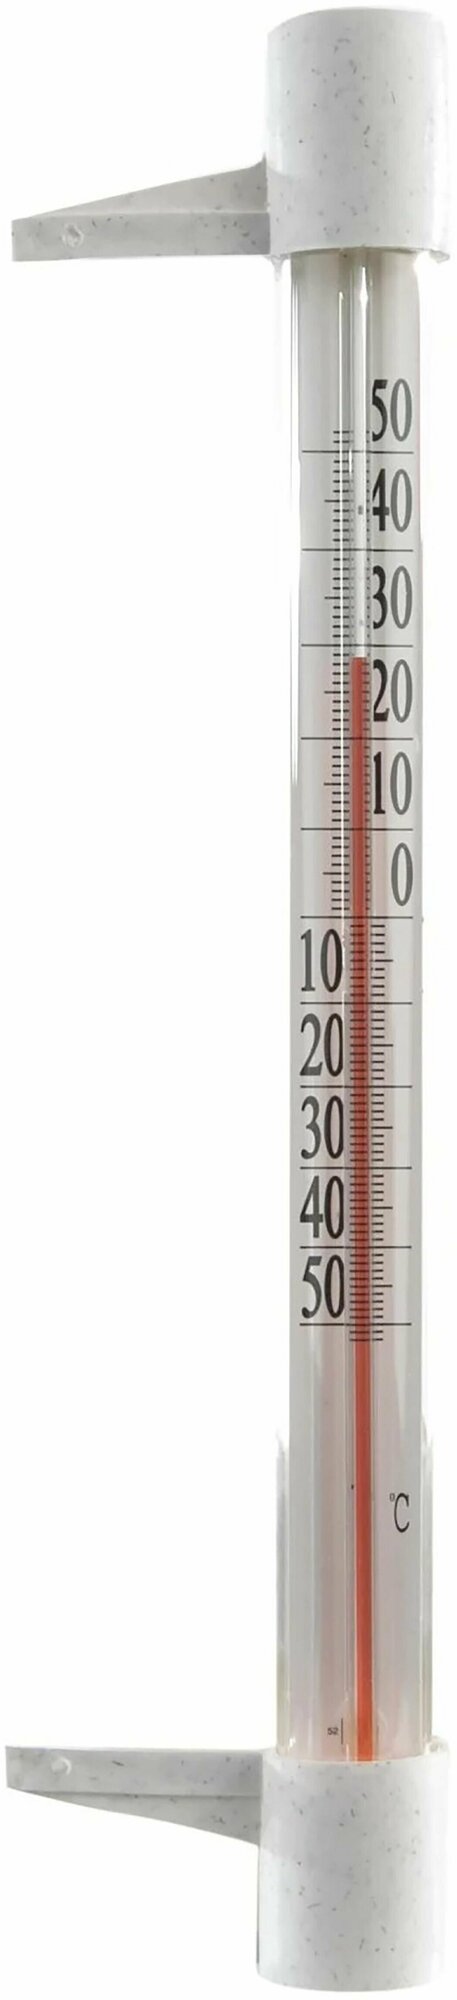 Оконный термометр "Стандарт" (диапазон показаний: от 50 C до +50 C) крепится саморезами. Классический прибор для измерения температуры окружающей среды вне помещения